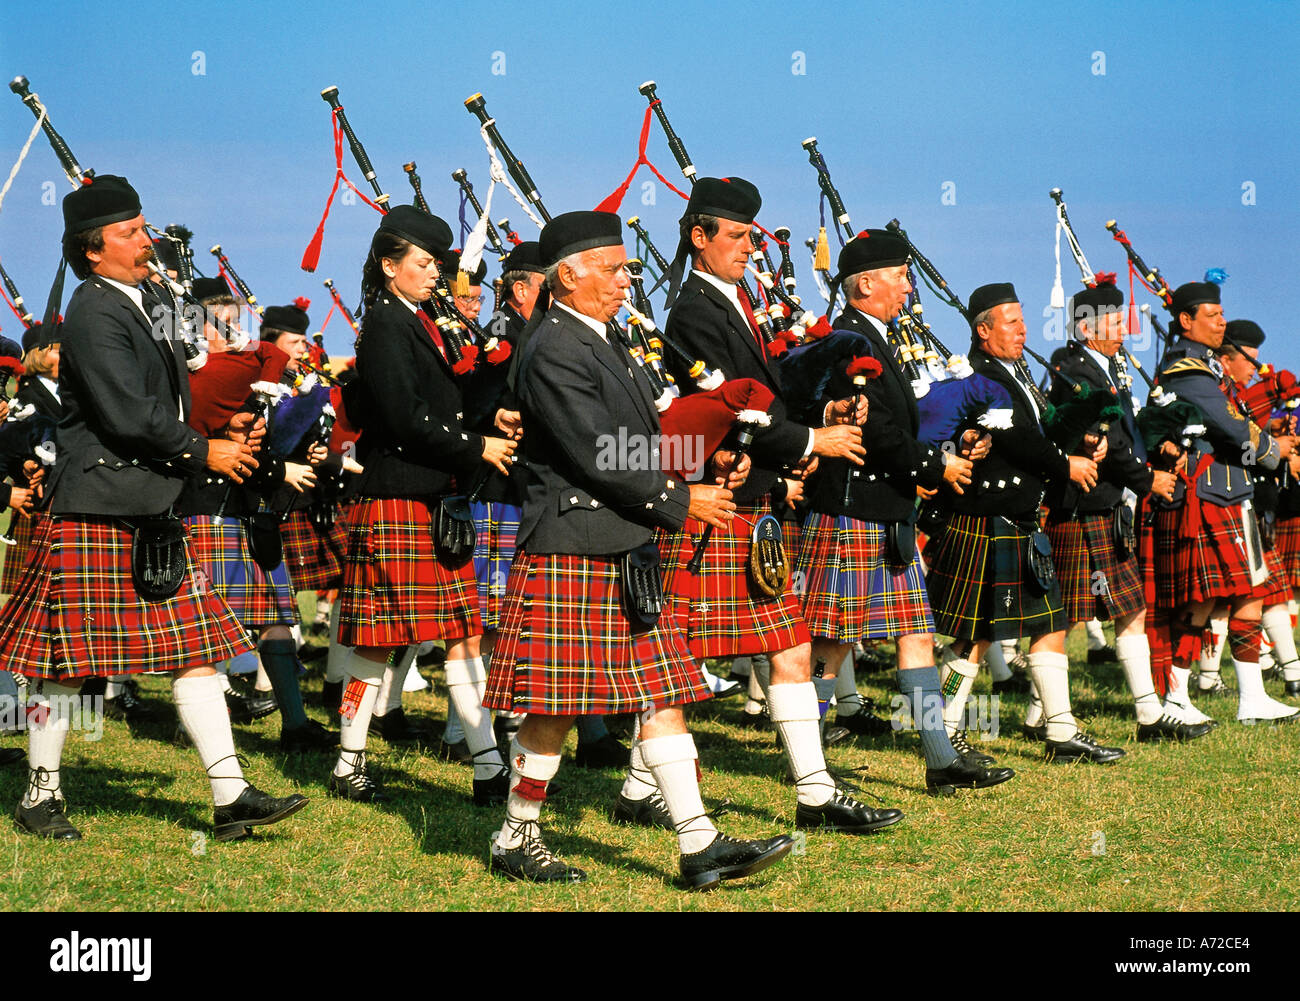 Schottische Dudelsackspieler bläst Bagpipes Schottland Vereinigtes  Königreich Großbritannien Stockfotografie - Alamy